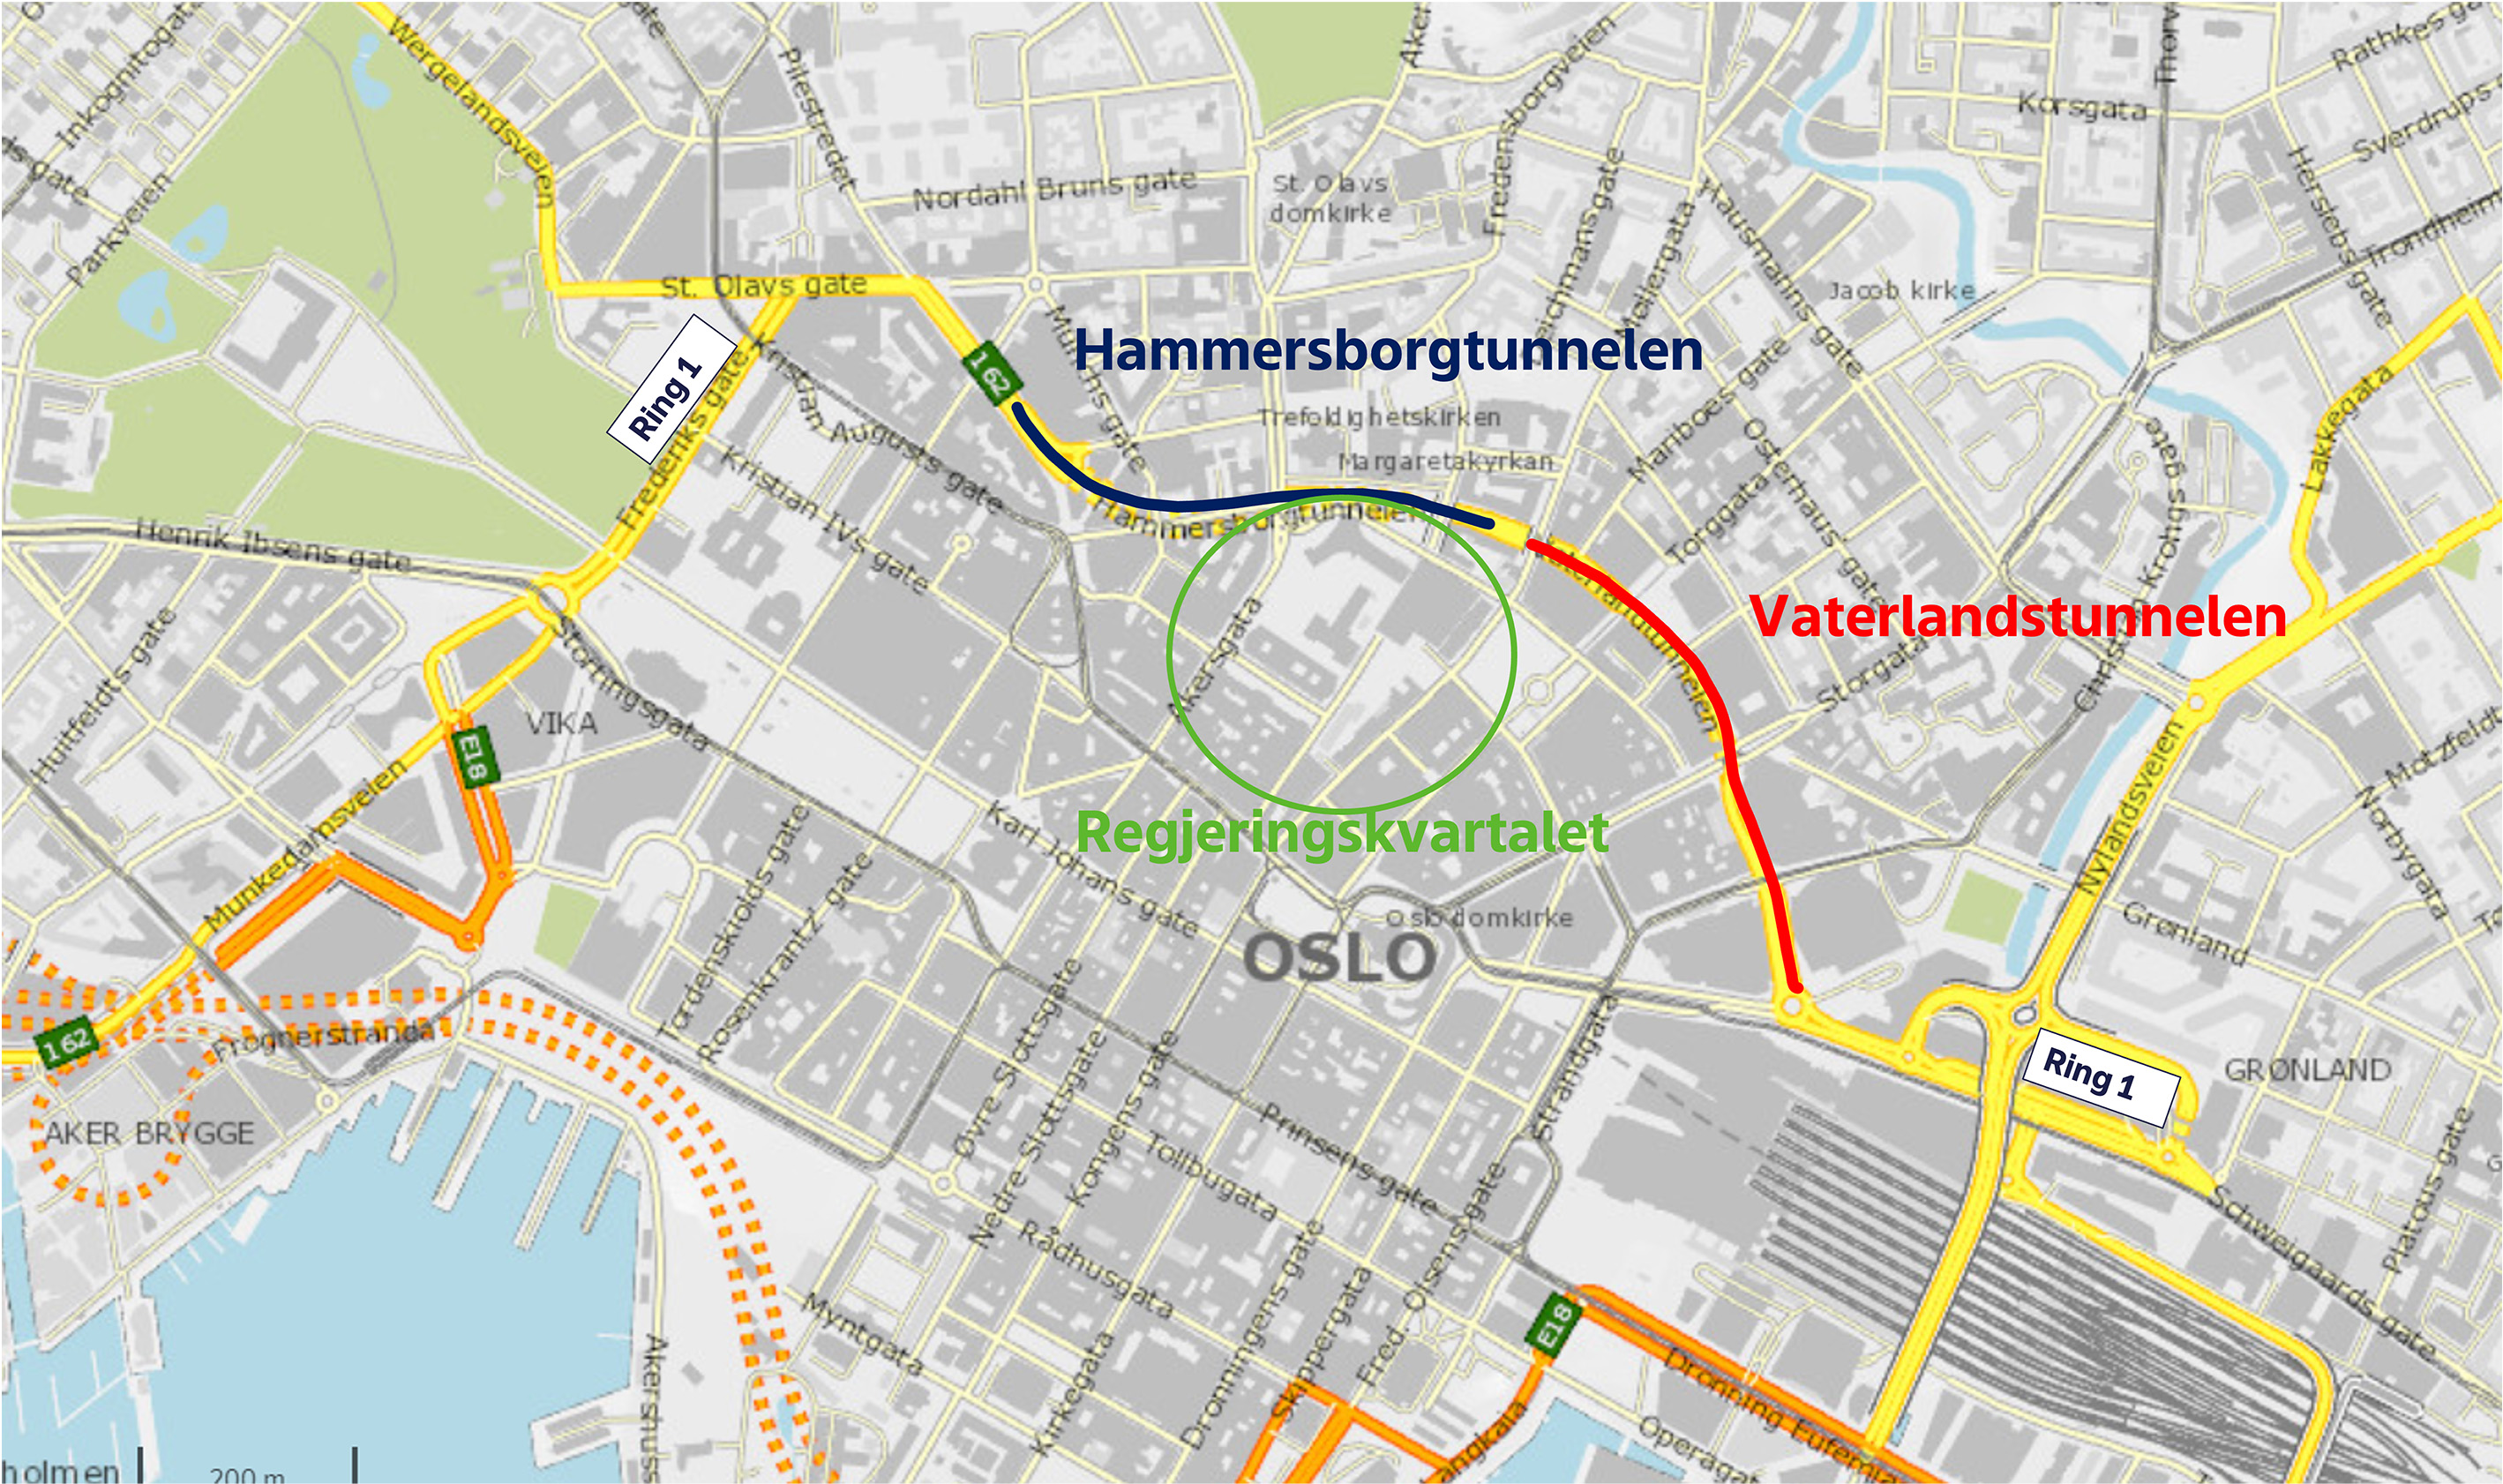 Kartutsnitt av Oslo sentrum med Ring 1 og Regjeringskvartalet markert.